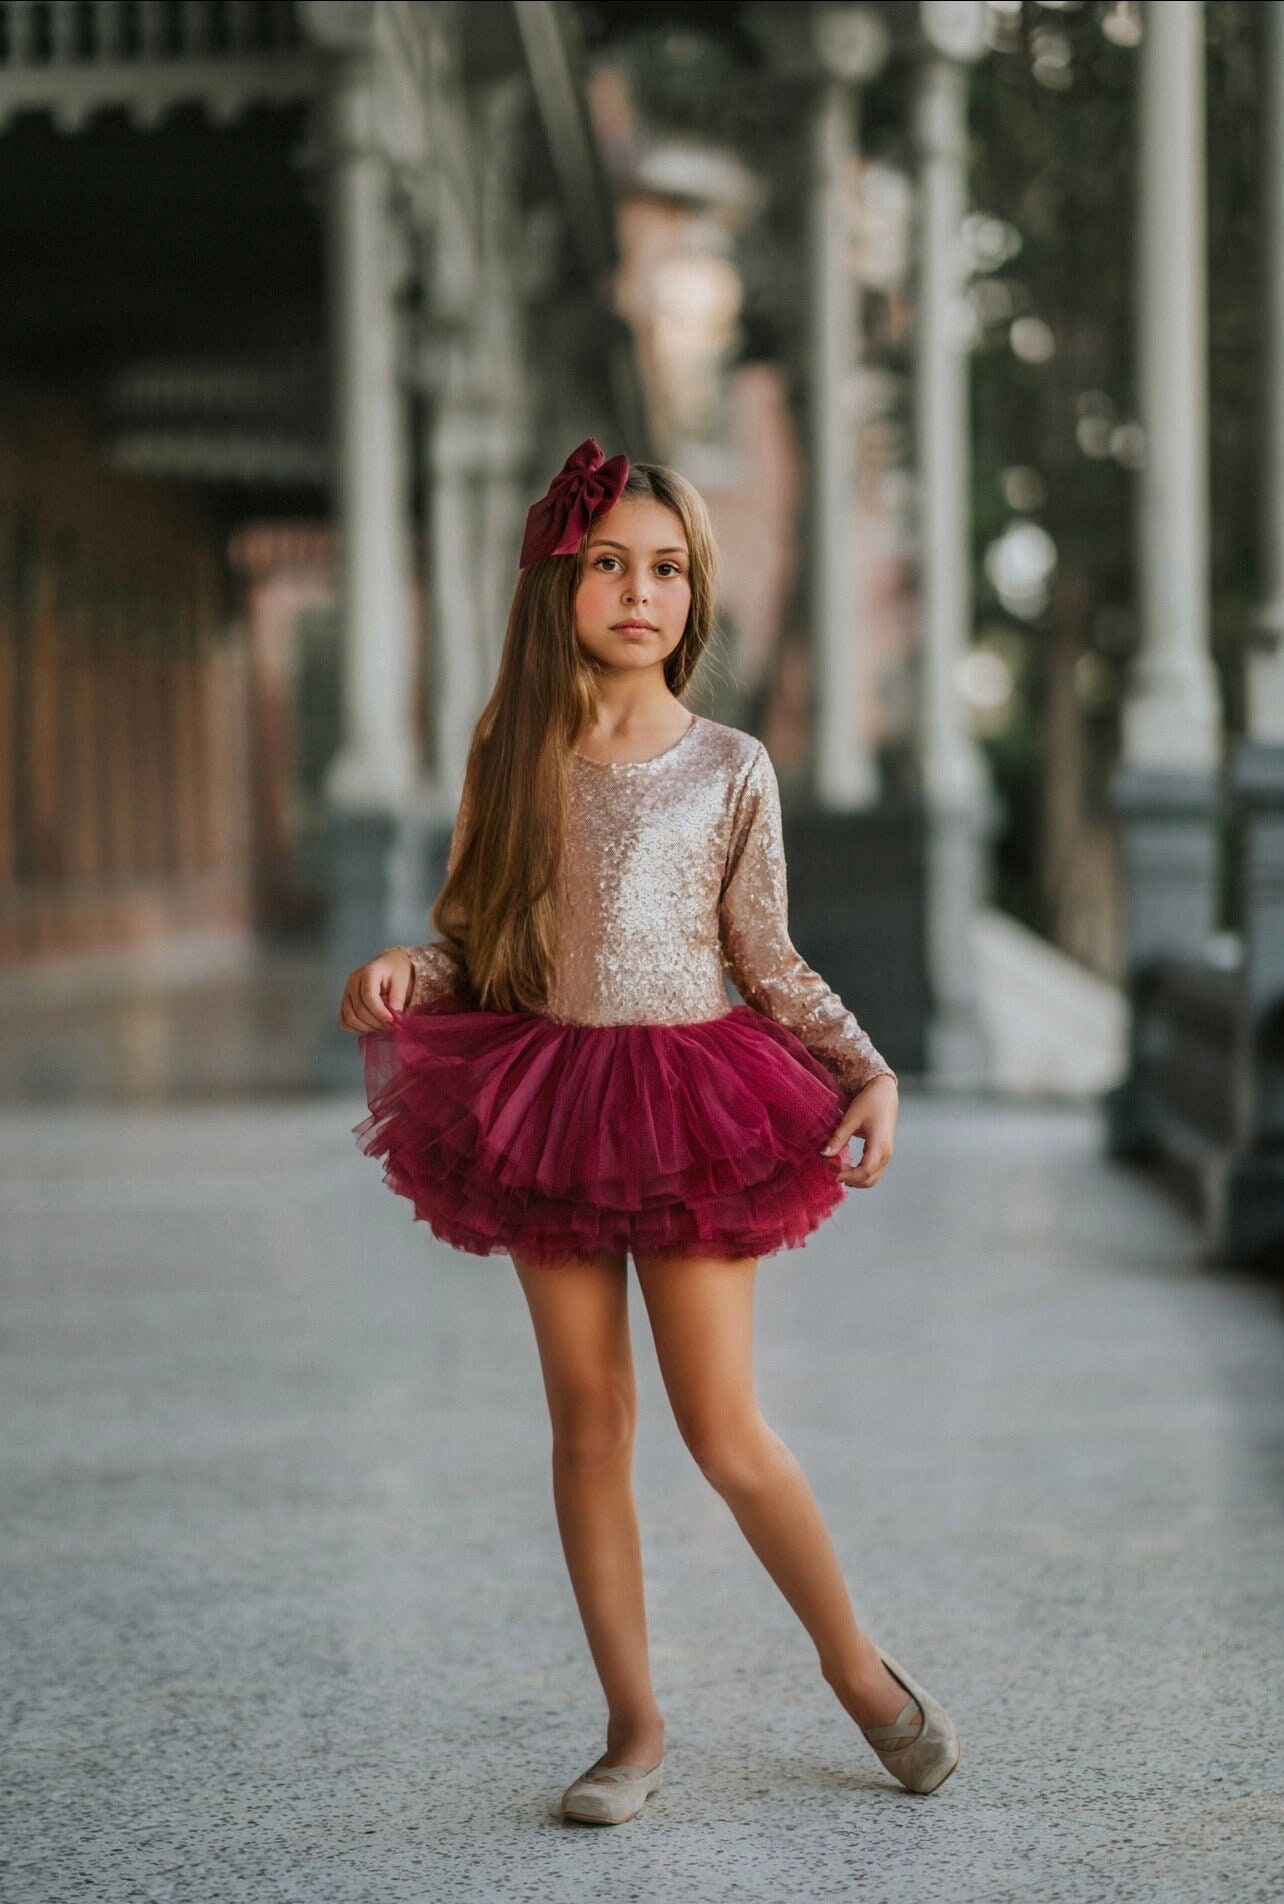 Maillot Ballet Niña So Danca con encaje floral para Comprar Online